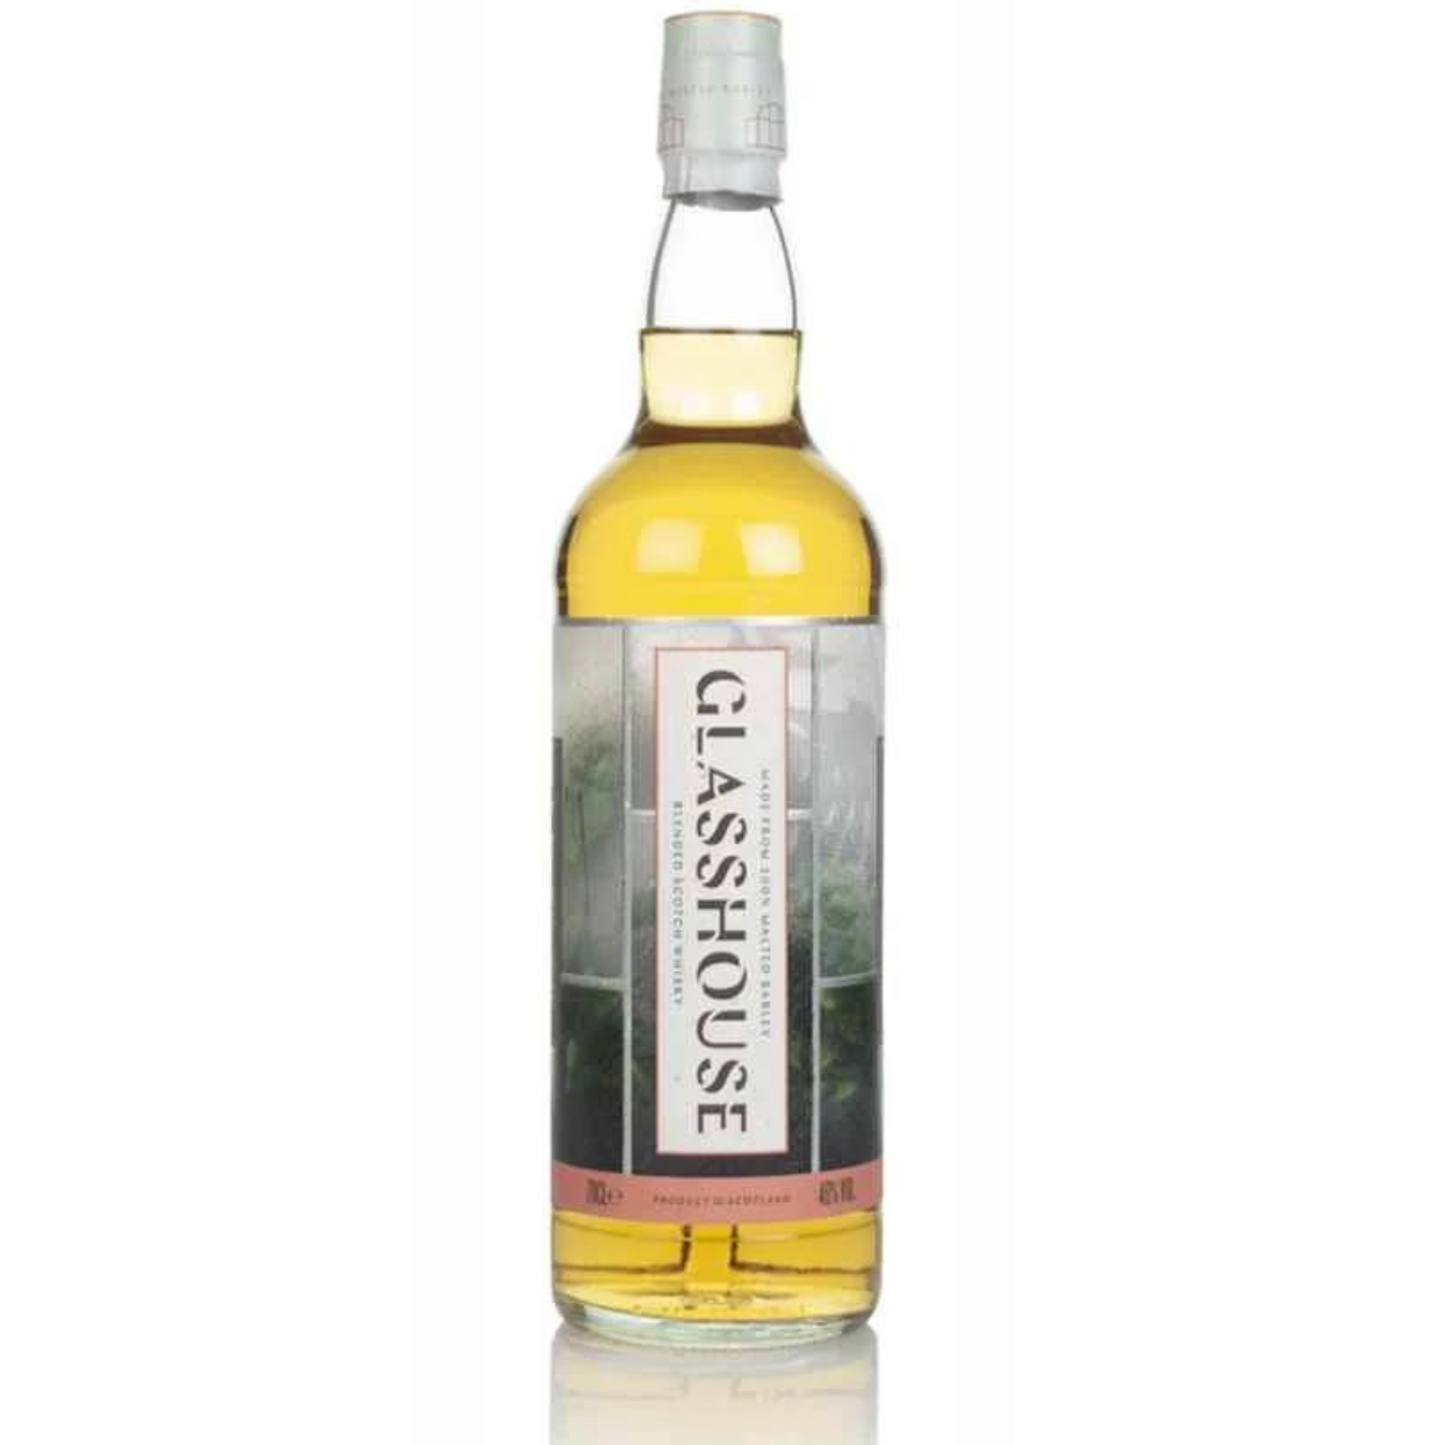 Glasshouse Blended Scotch Whisky